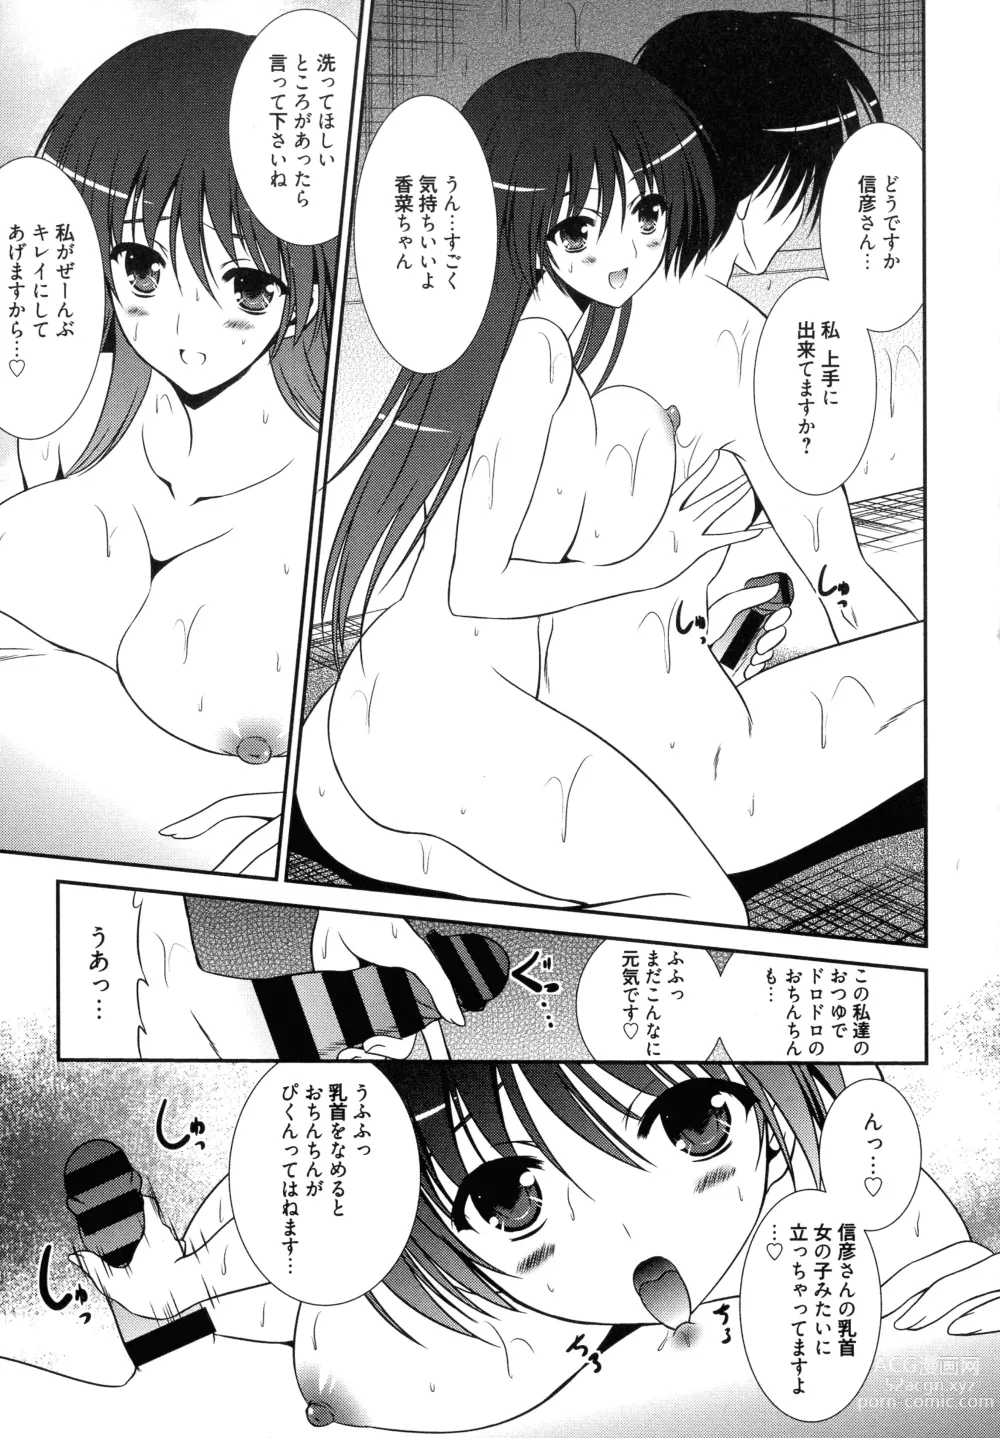 Page 11 of manga Nyuu!